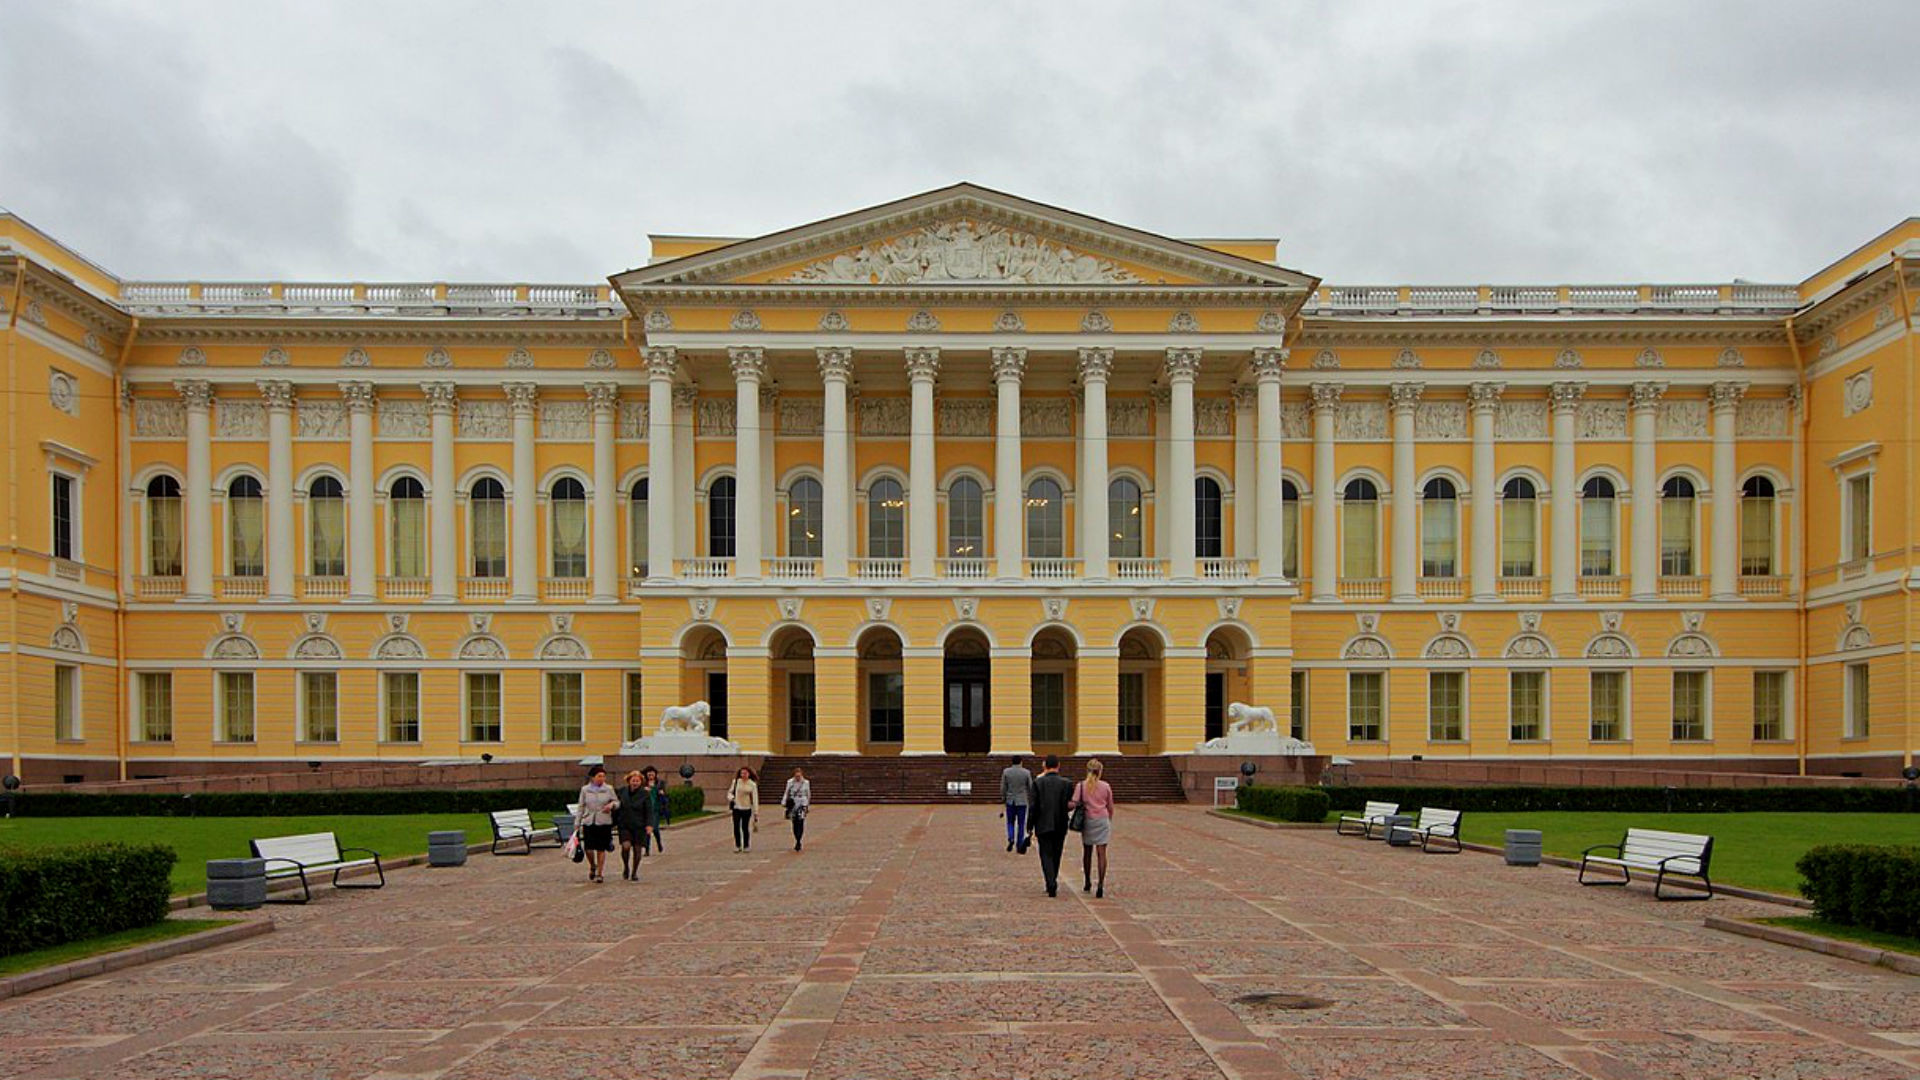  Musée russe, Palais Mikhaïlovski
 Saint-Pétersbourg